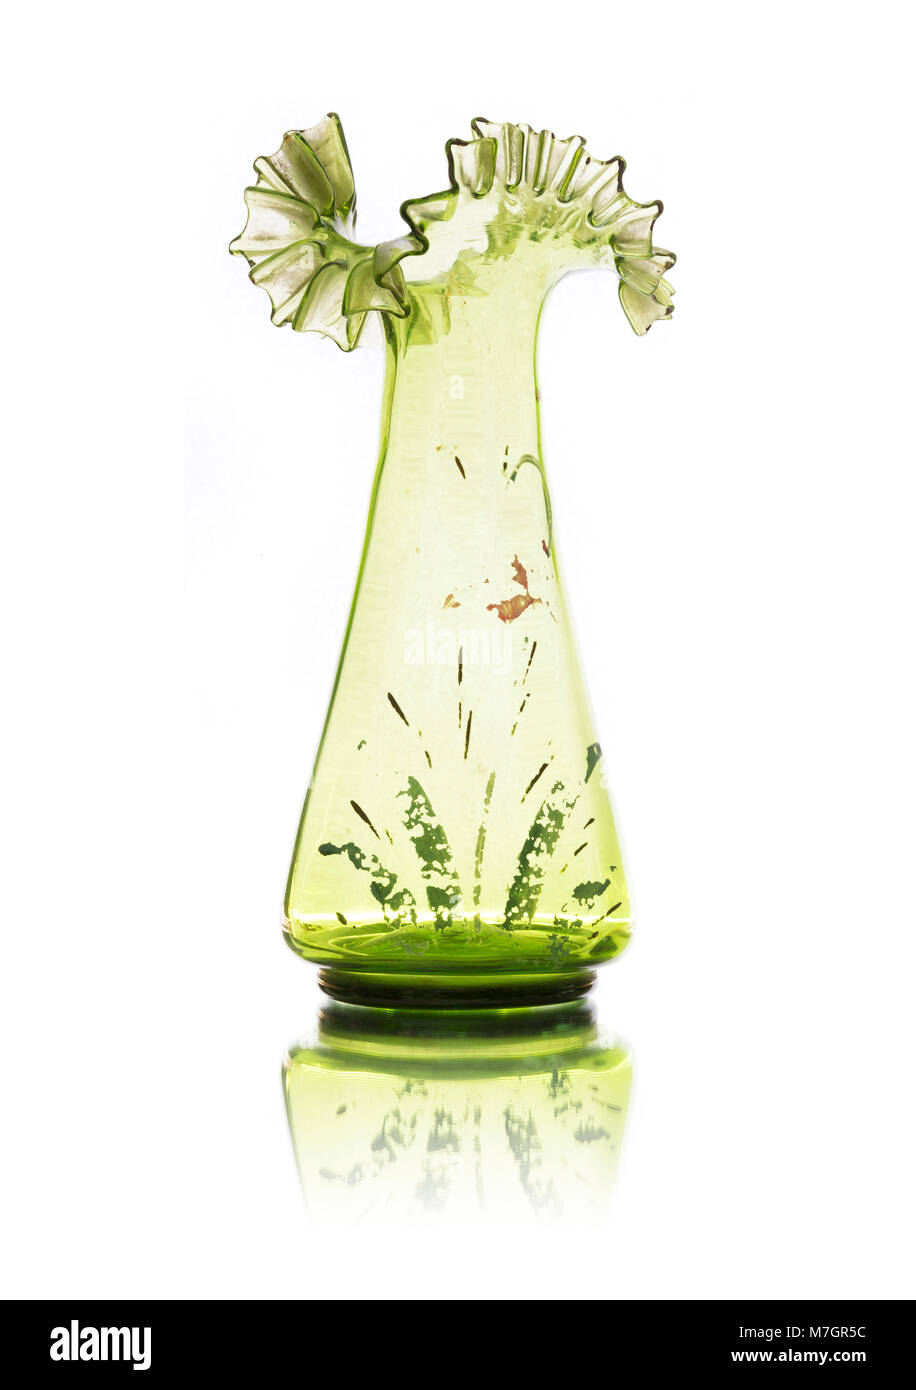 Vintage glass vase isolated on white background Stock Photo